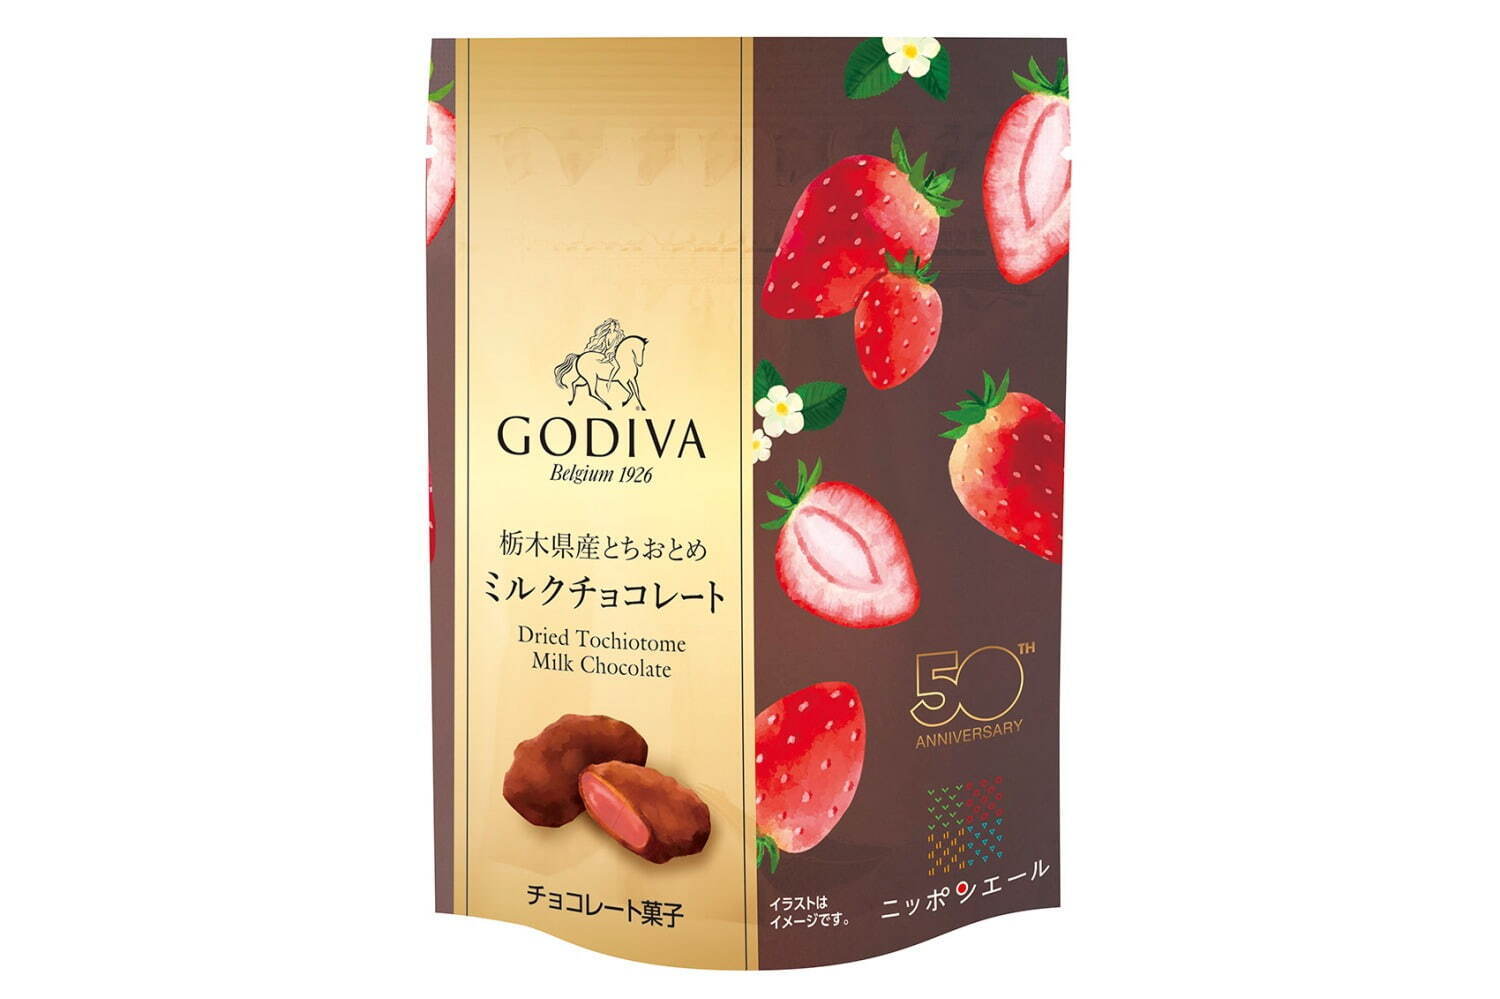 「栃木県産とちおとめ ミルクチョコレート」20g/842円